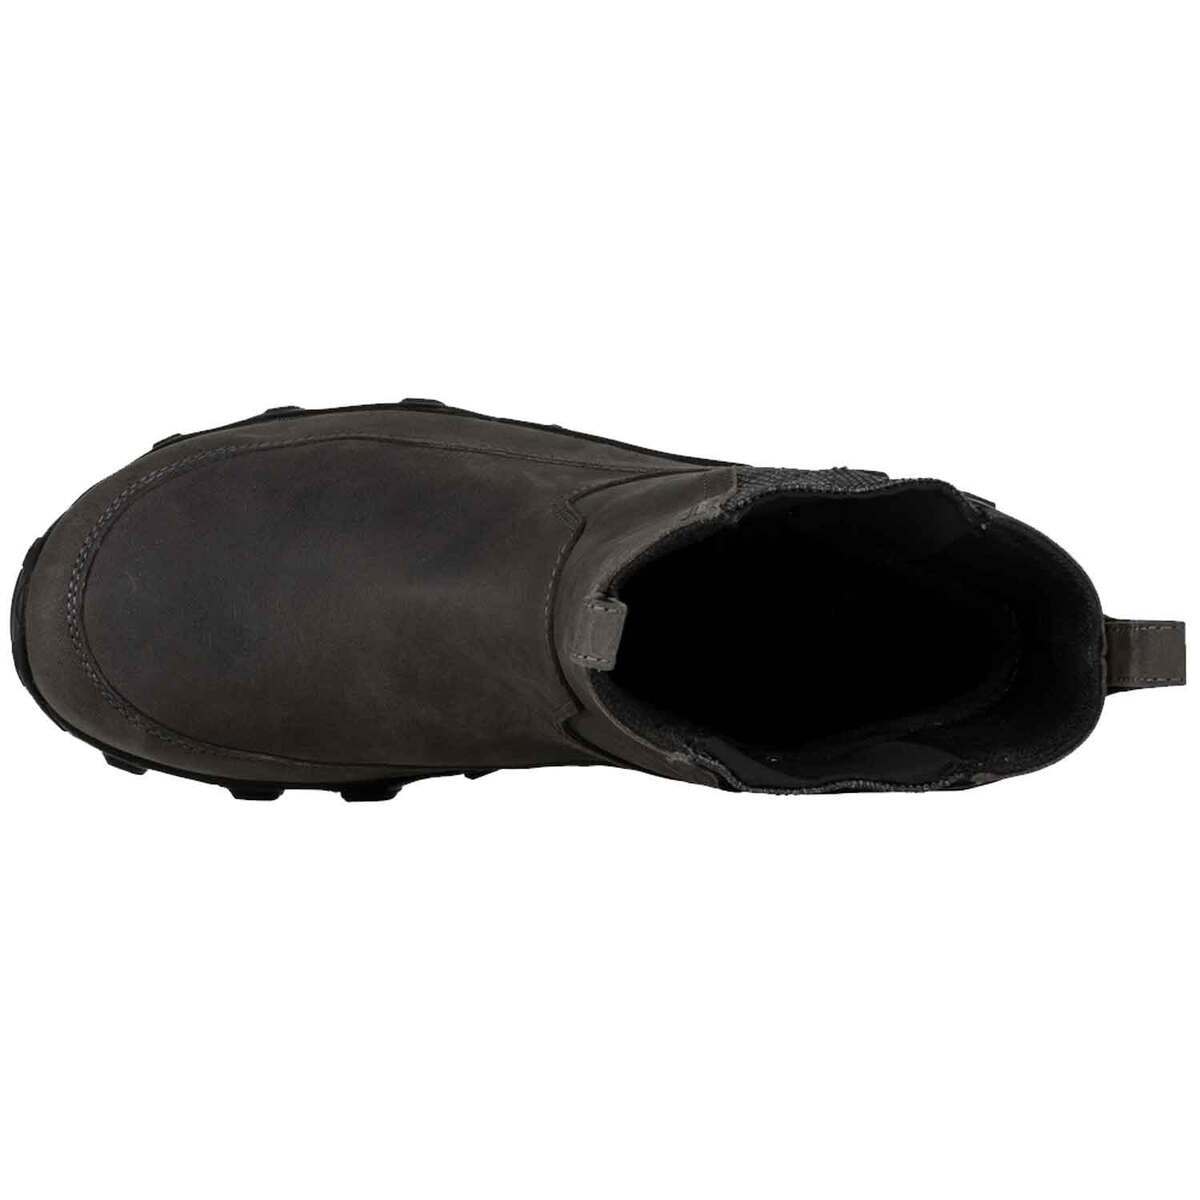 Oboz Men's Big Sky II 7in 200g Insulated Waterproof Winter Boots ...